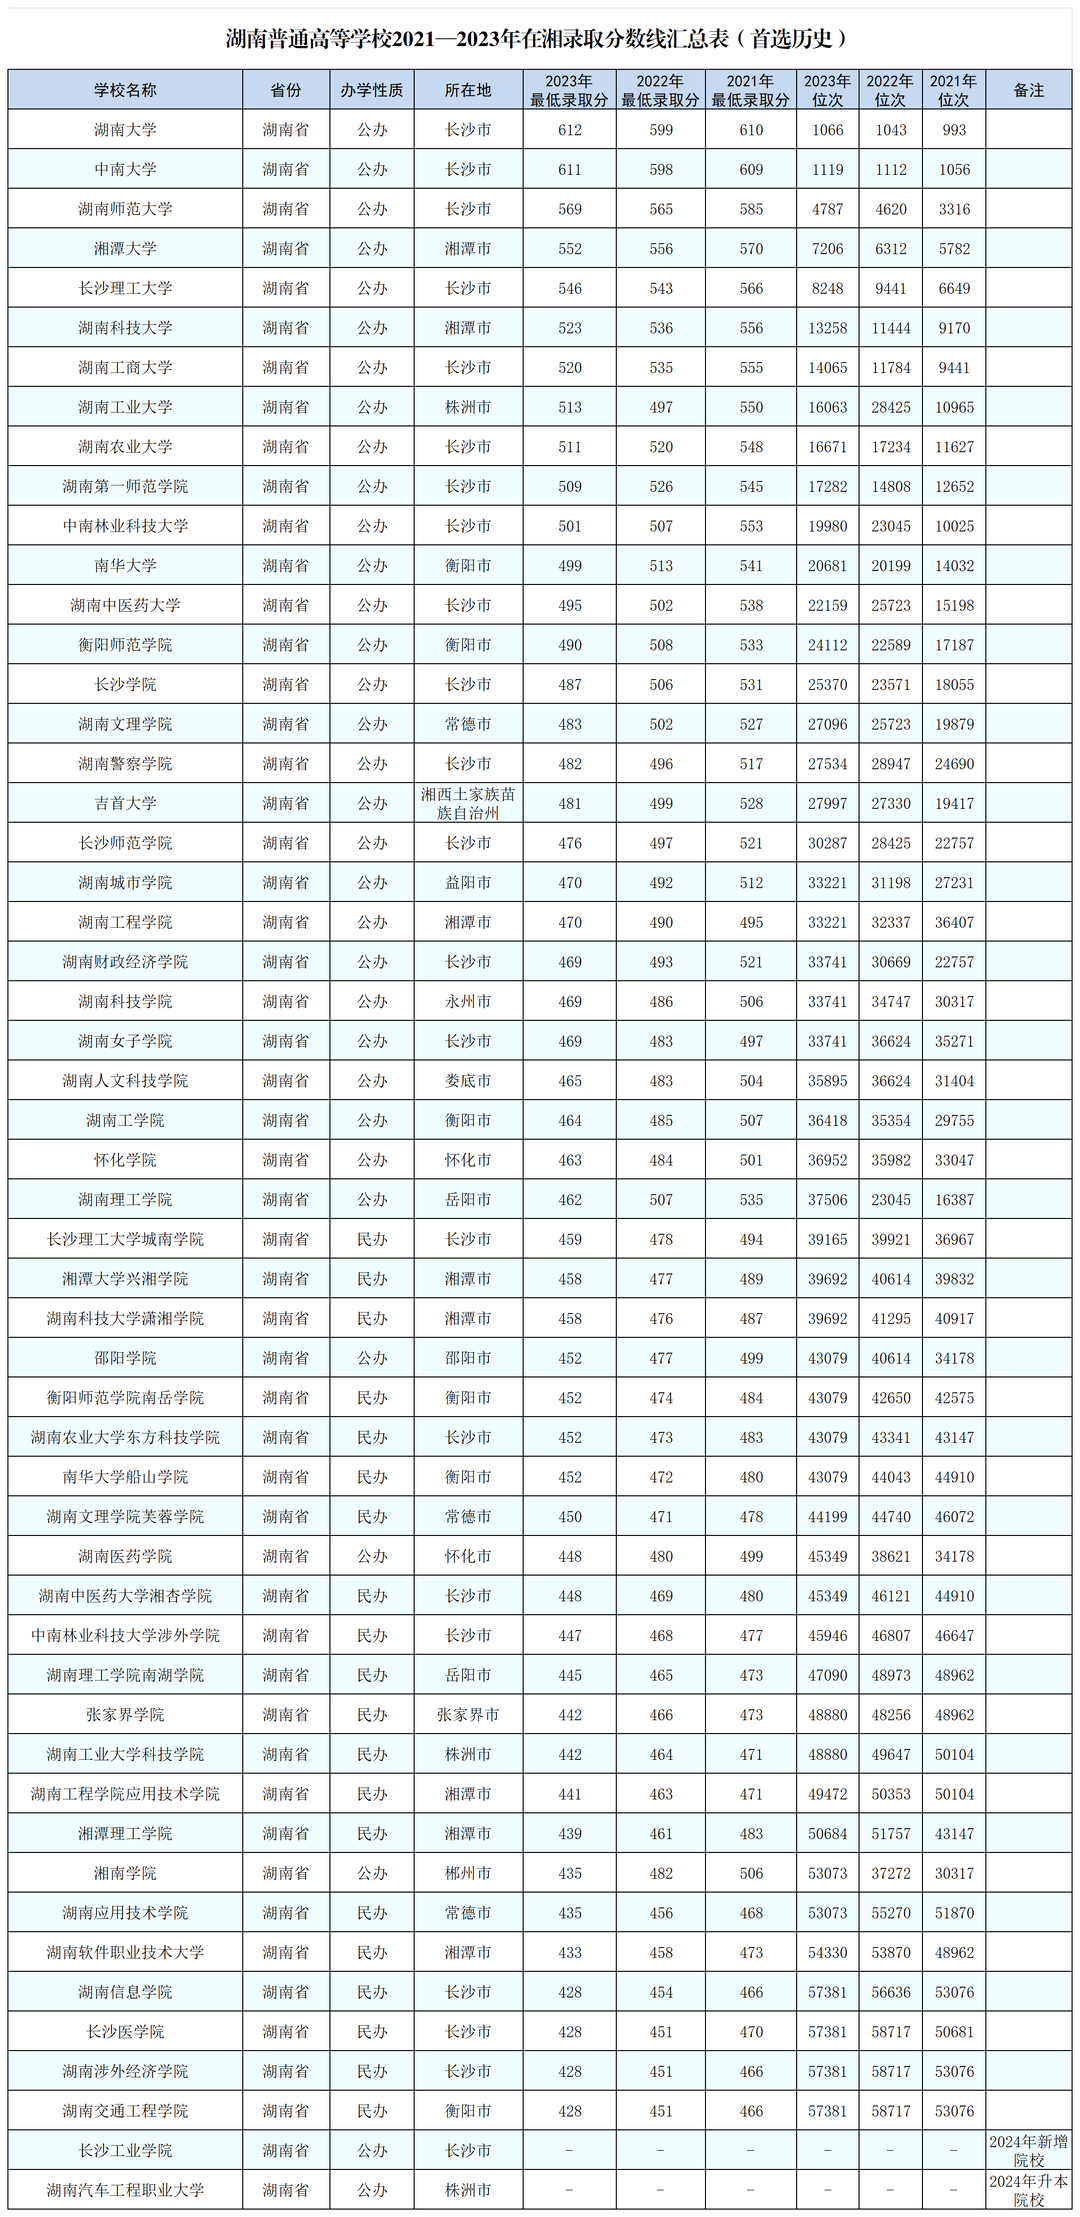 湖南本科院校2021—2023年在湘最低录取分及排位情况